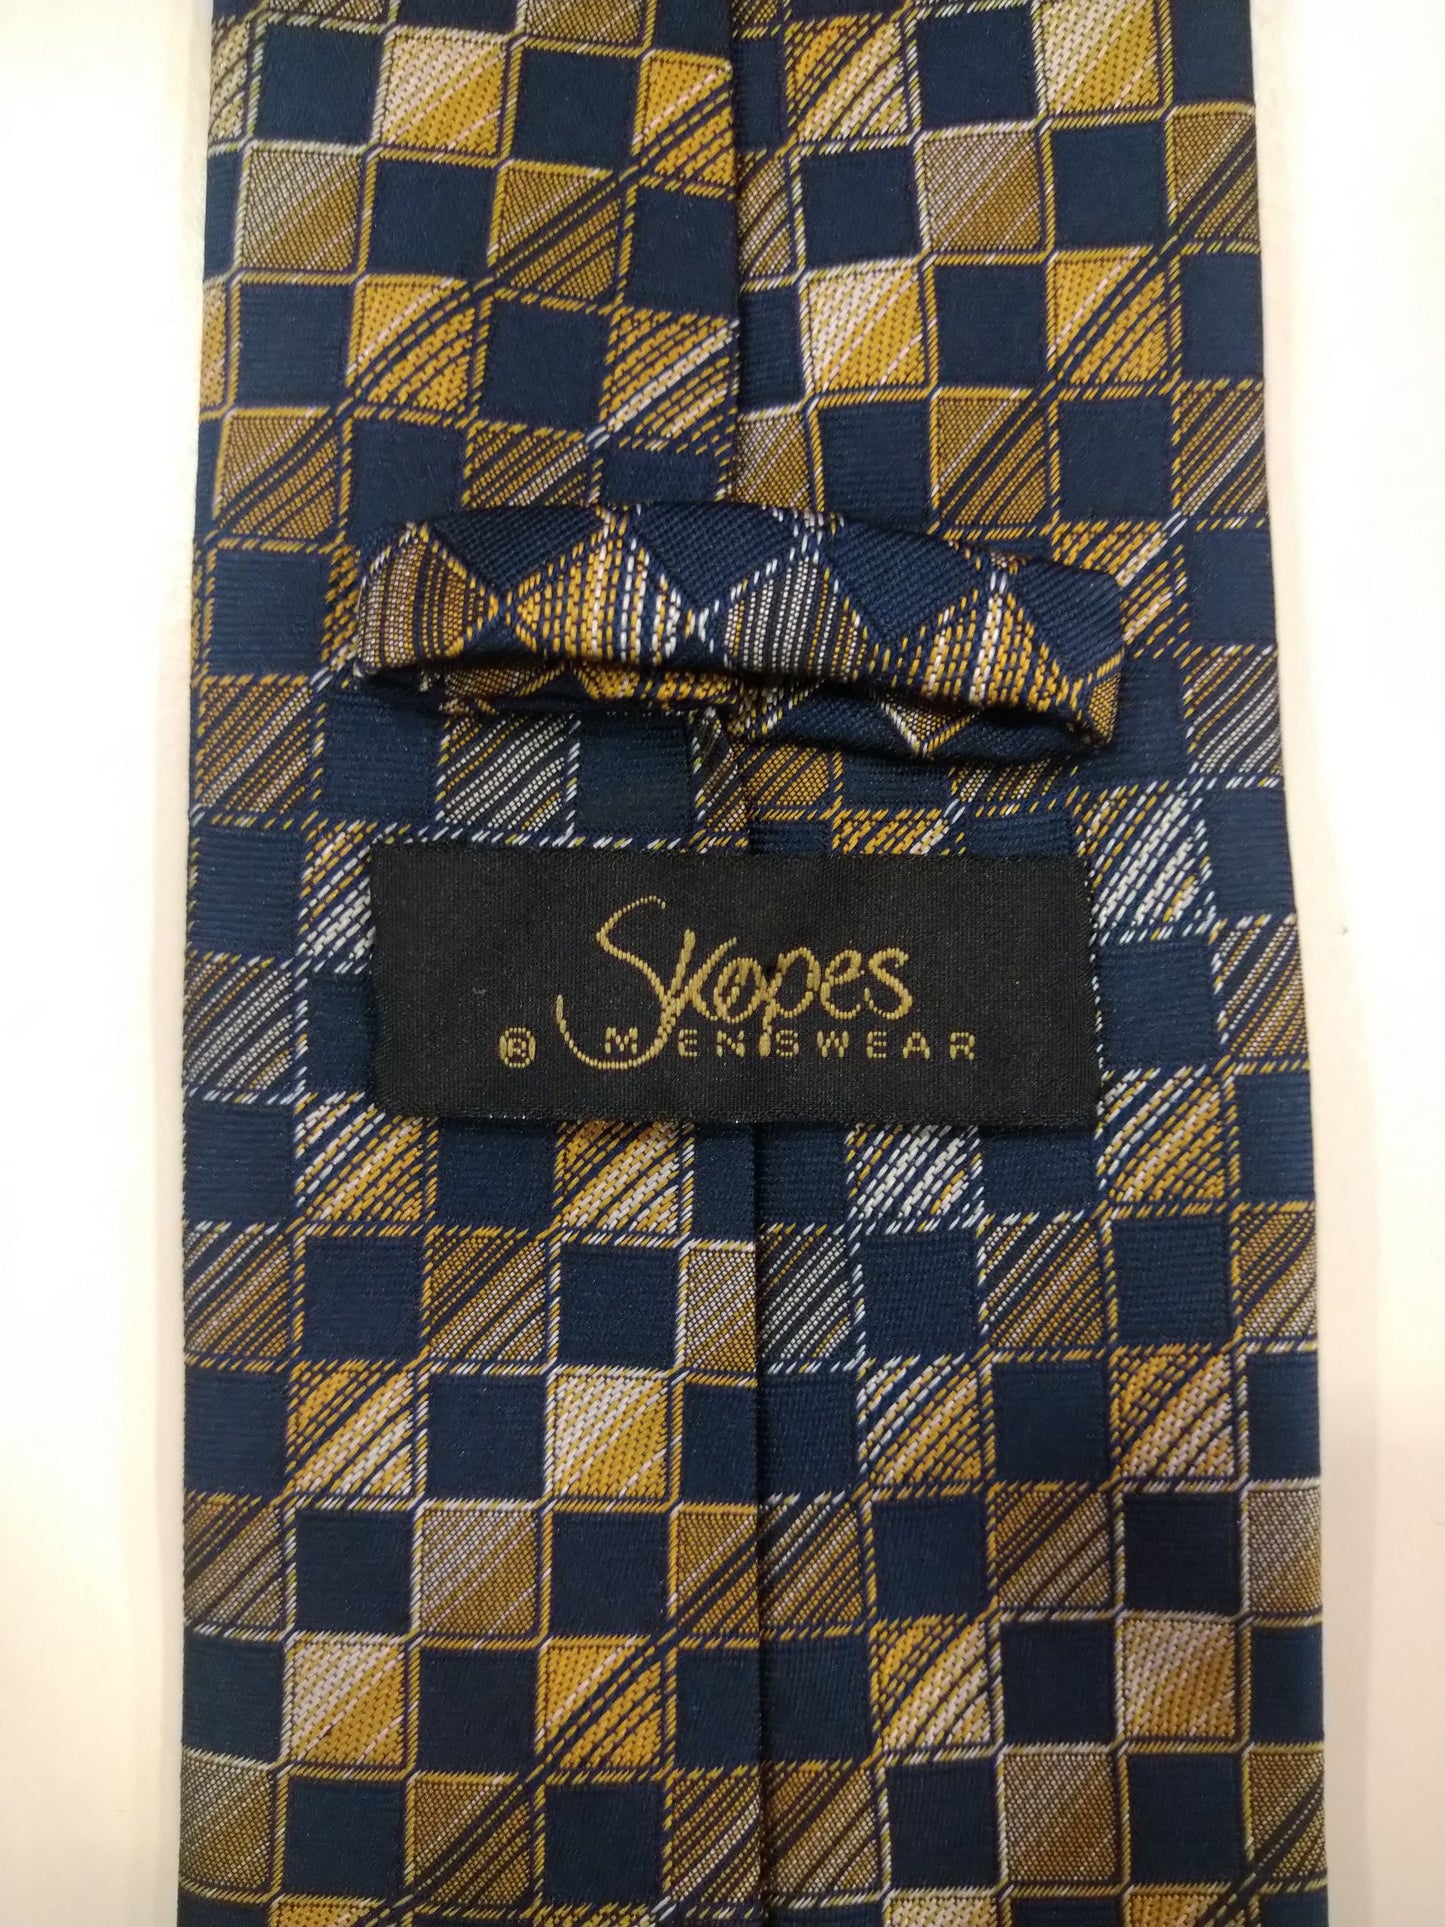 Cravate en polyester skopes. Motif jaune gris bleu séparé.